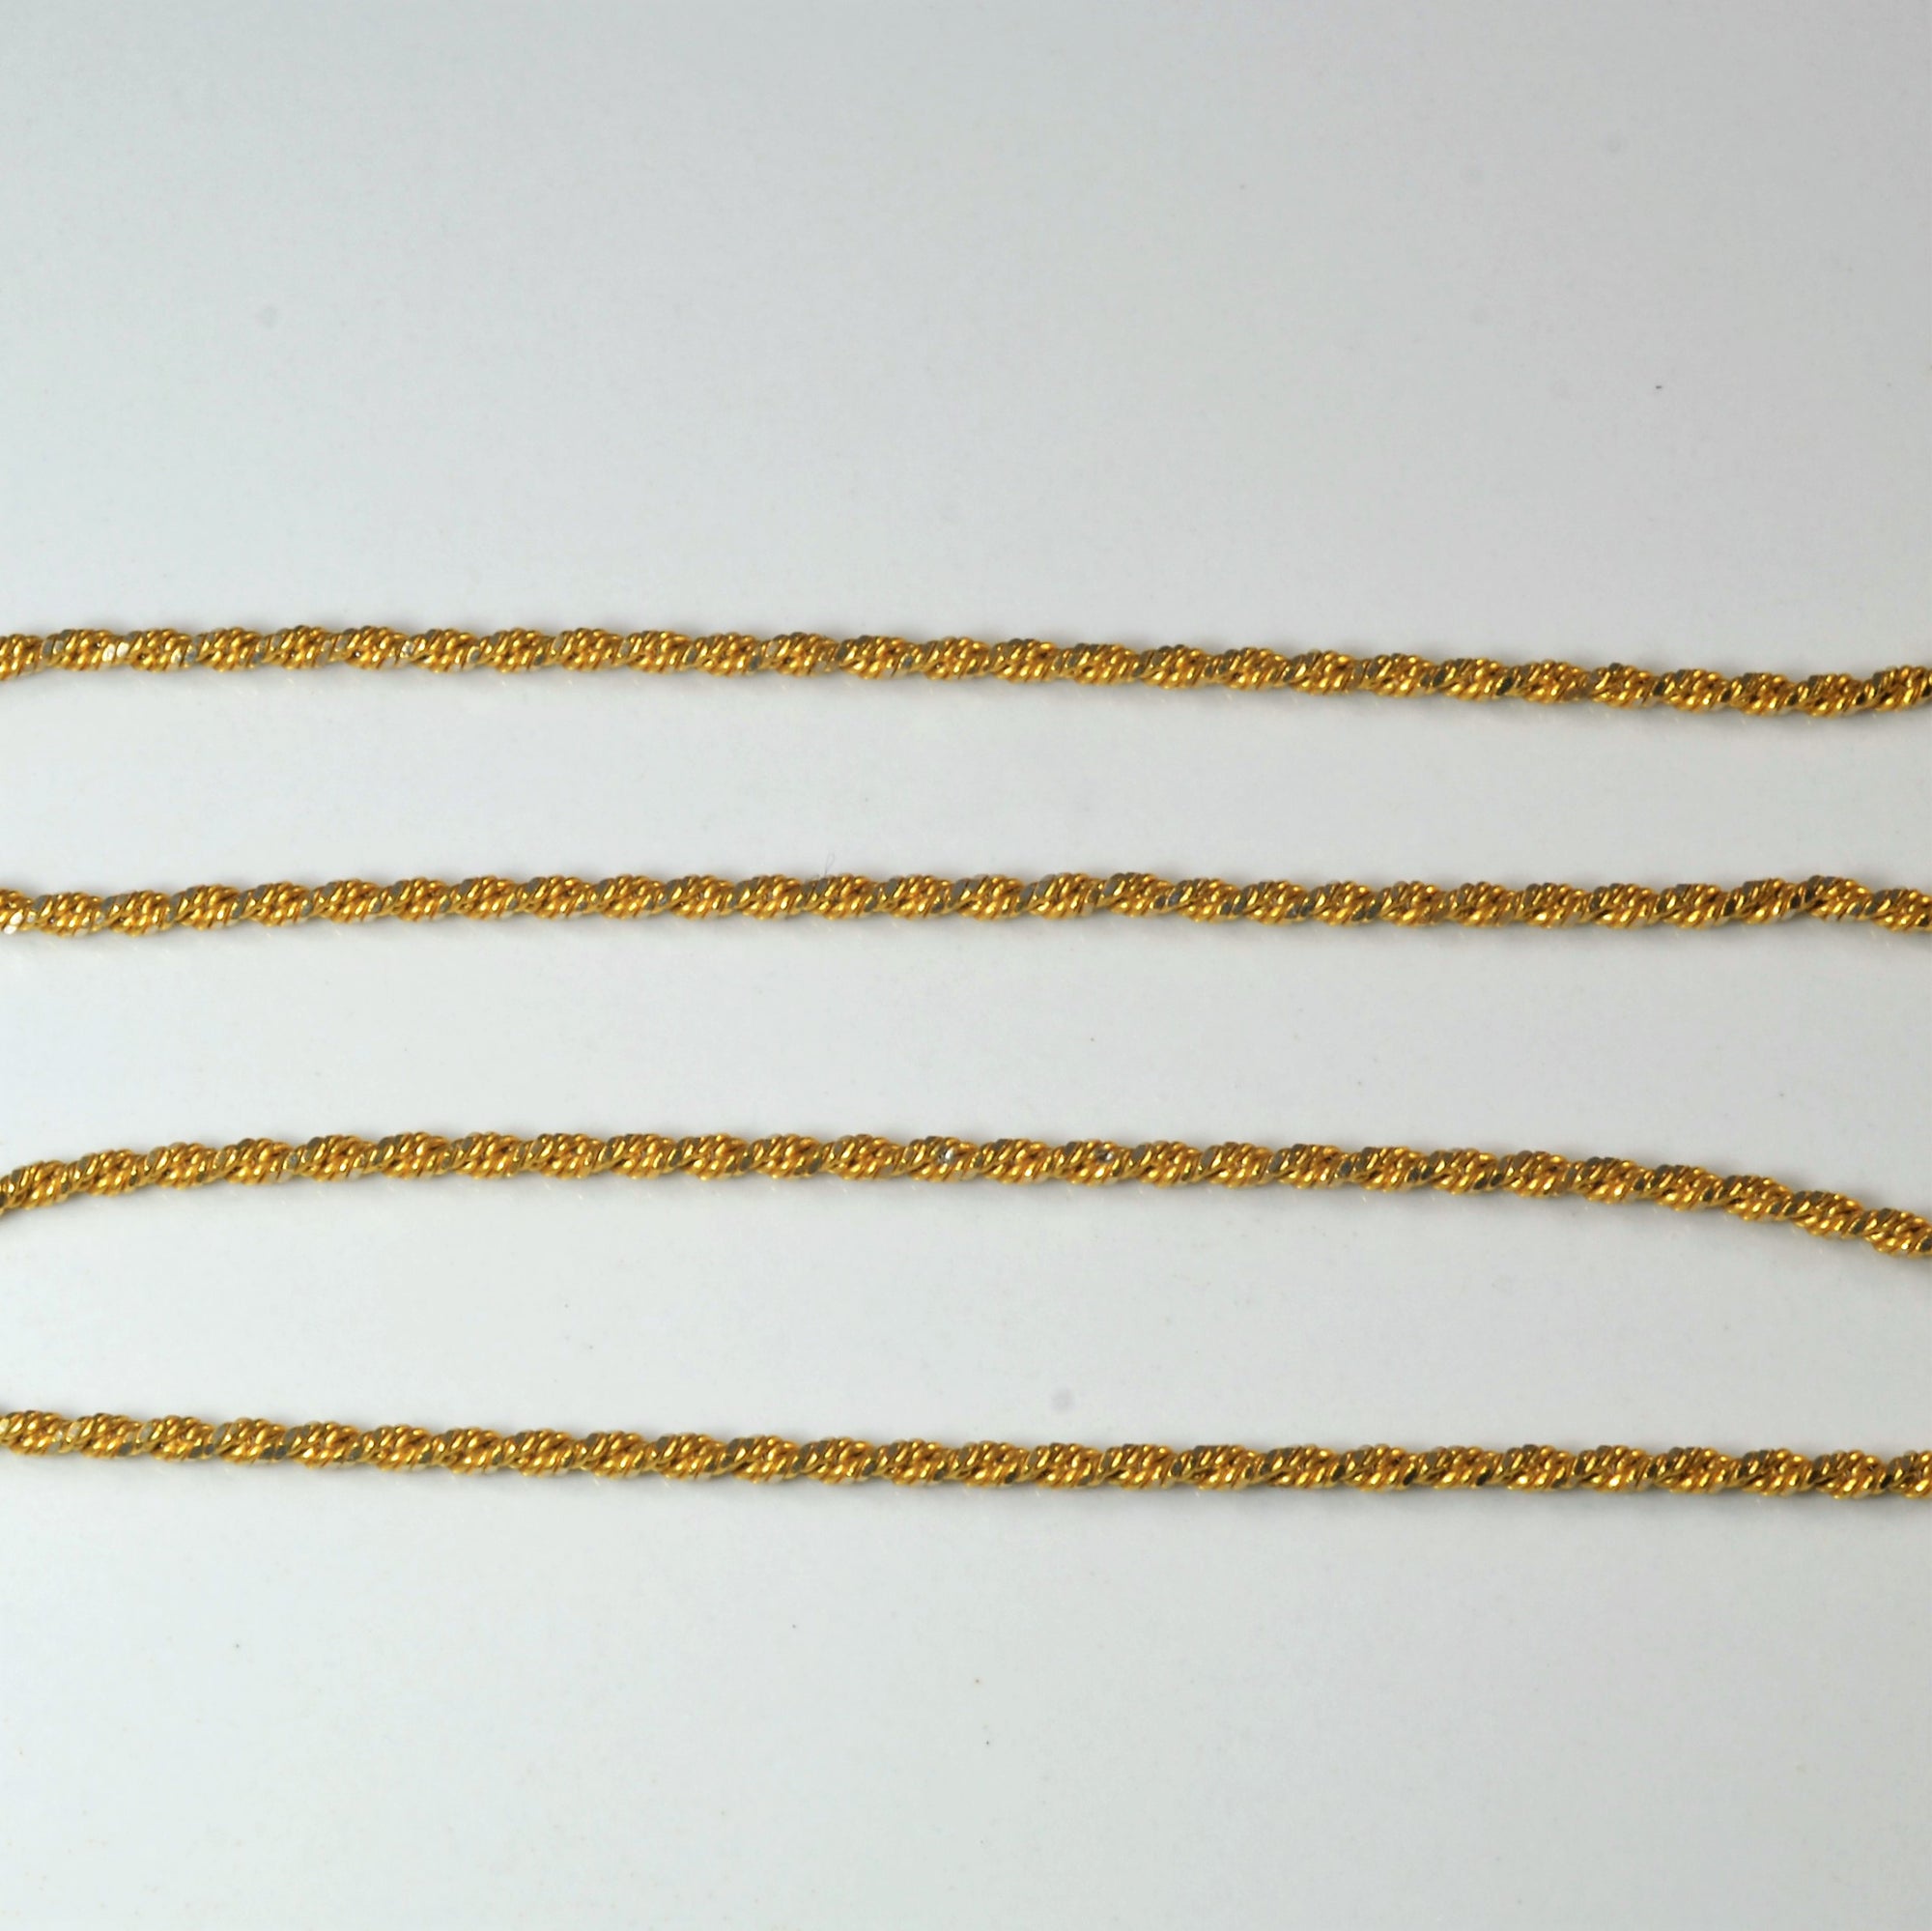 22k Yellow Gold Rope Chain | 18